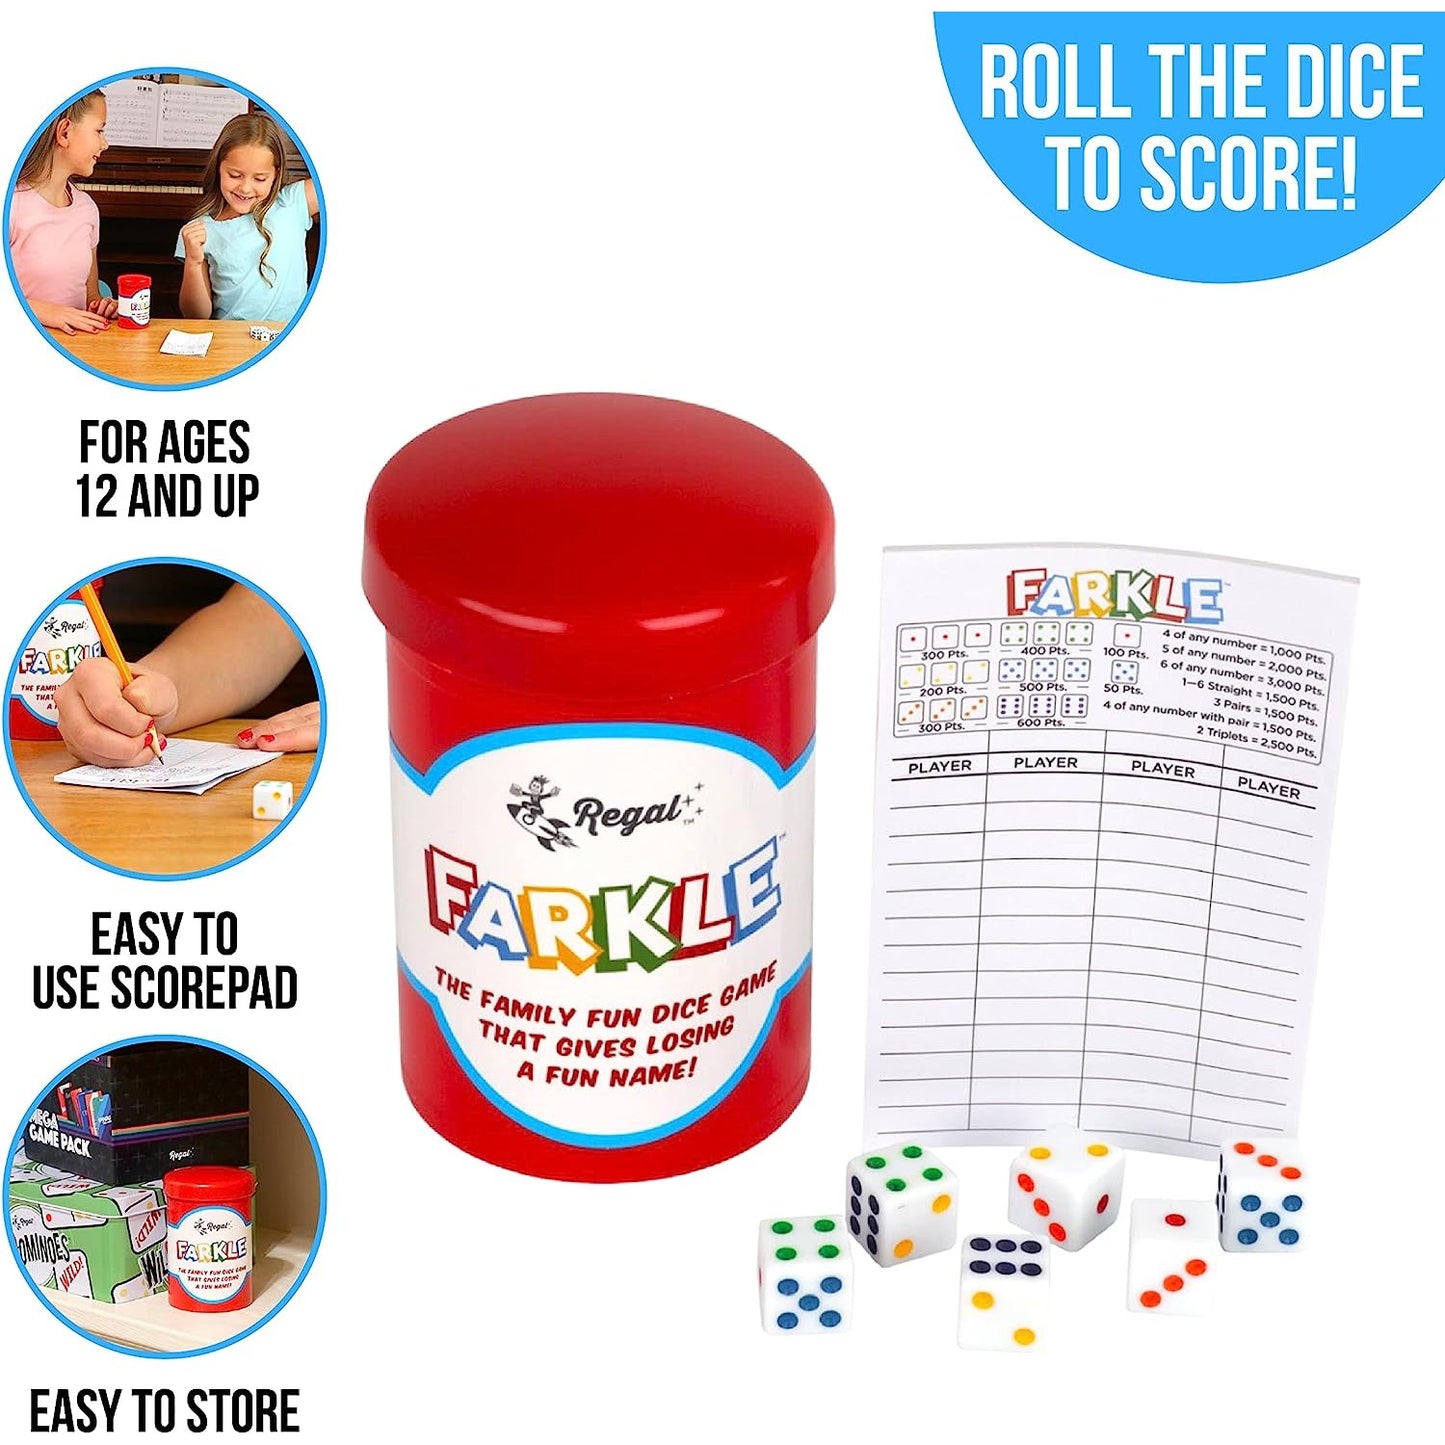 A Farkle dice game set.